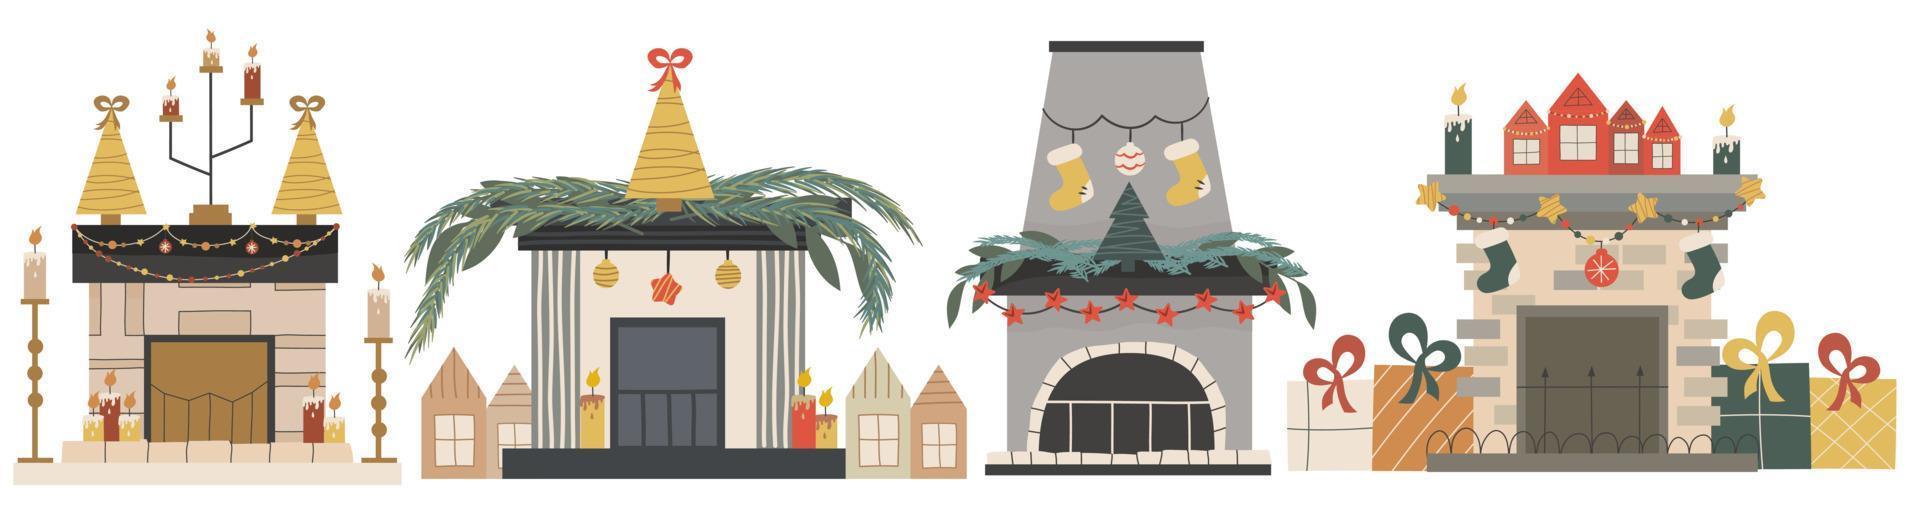 Lareira de Natal escandinava com abeto isolado e conjunto de velas. festiva lareira acolhedora com ilustração de decorações.vector de Natal em um estilo simples. temporada de férias de inverno aconchegante. vetor